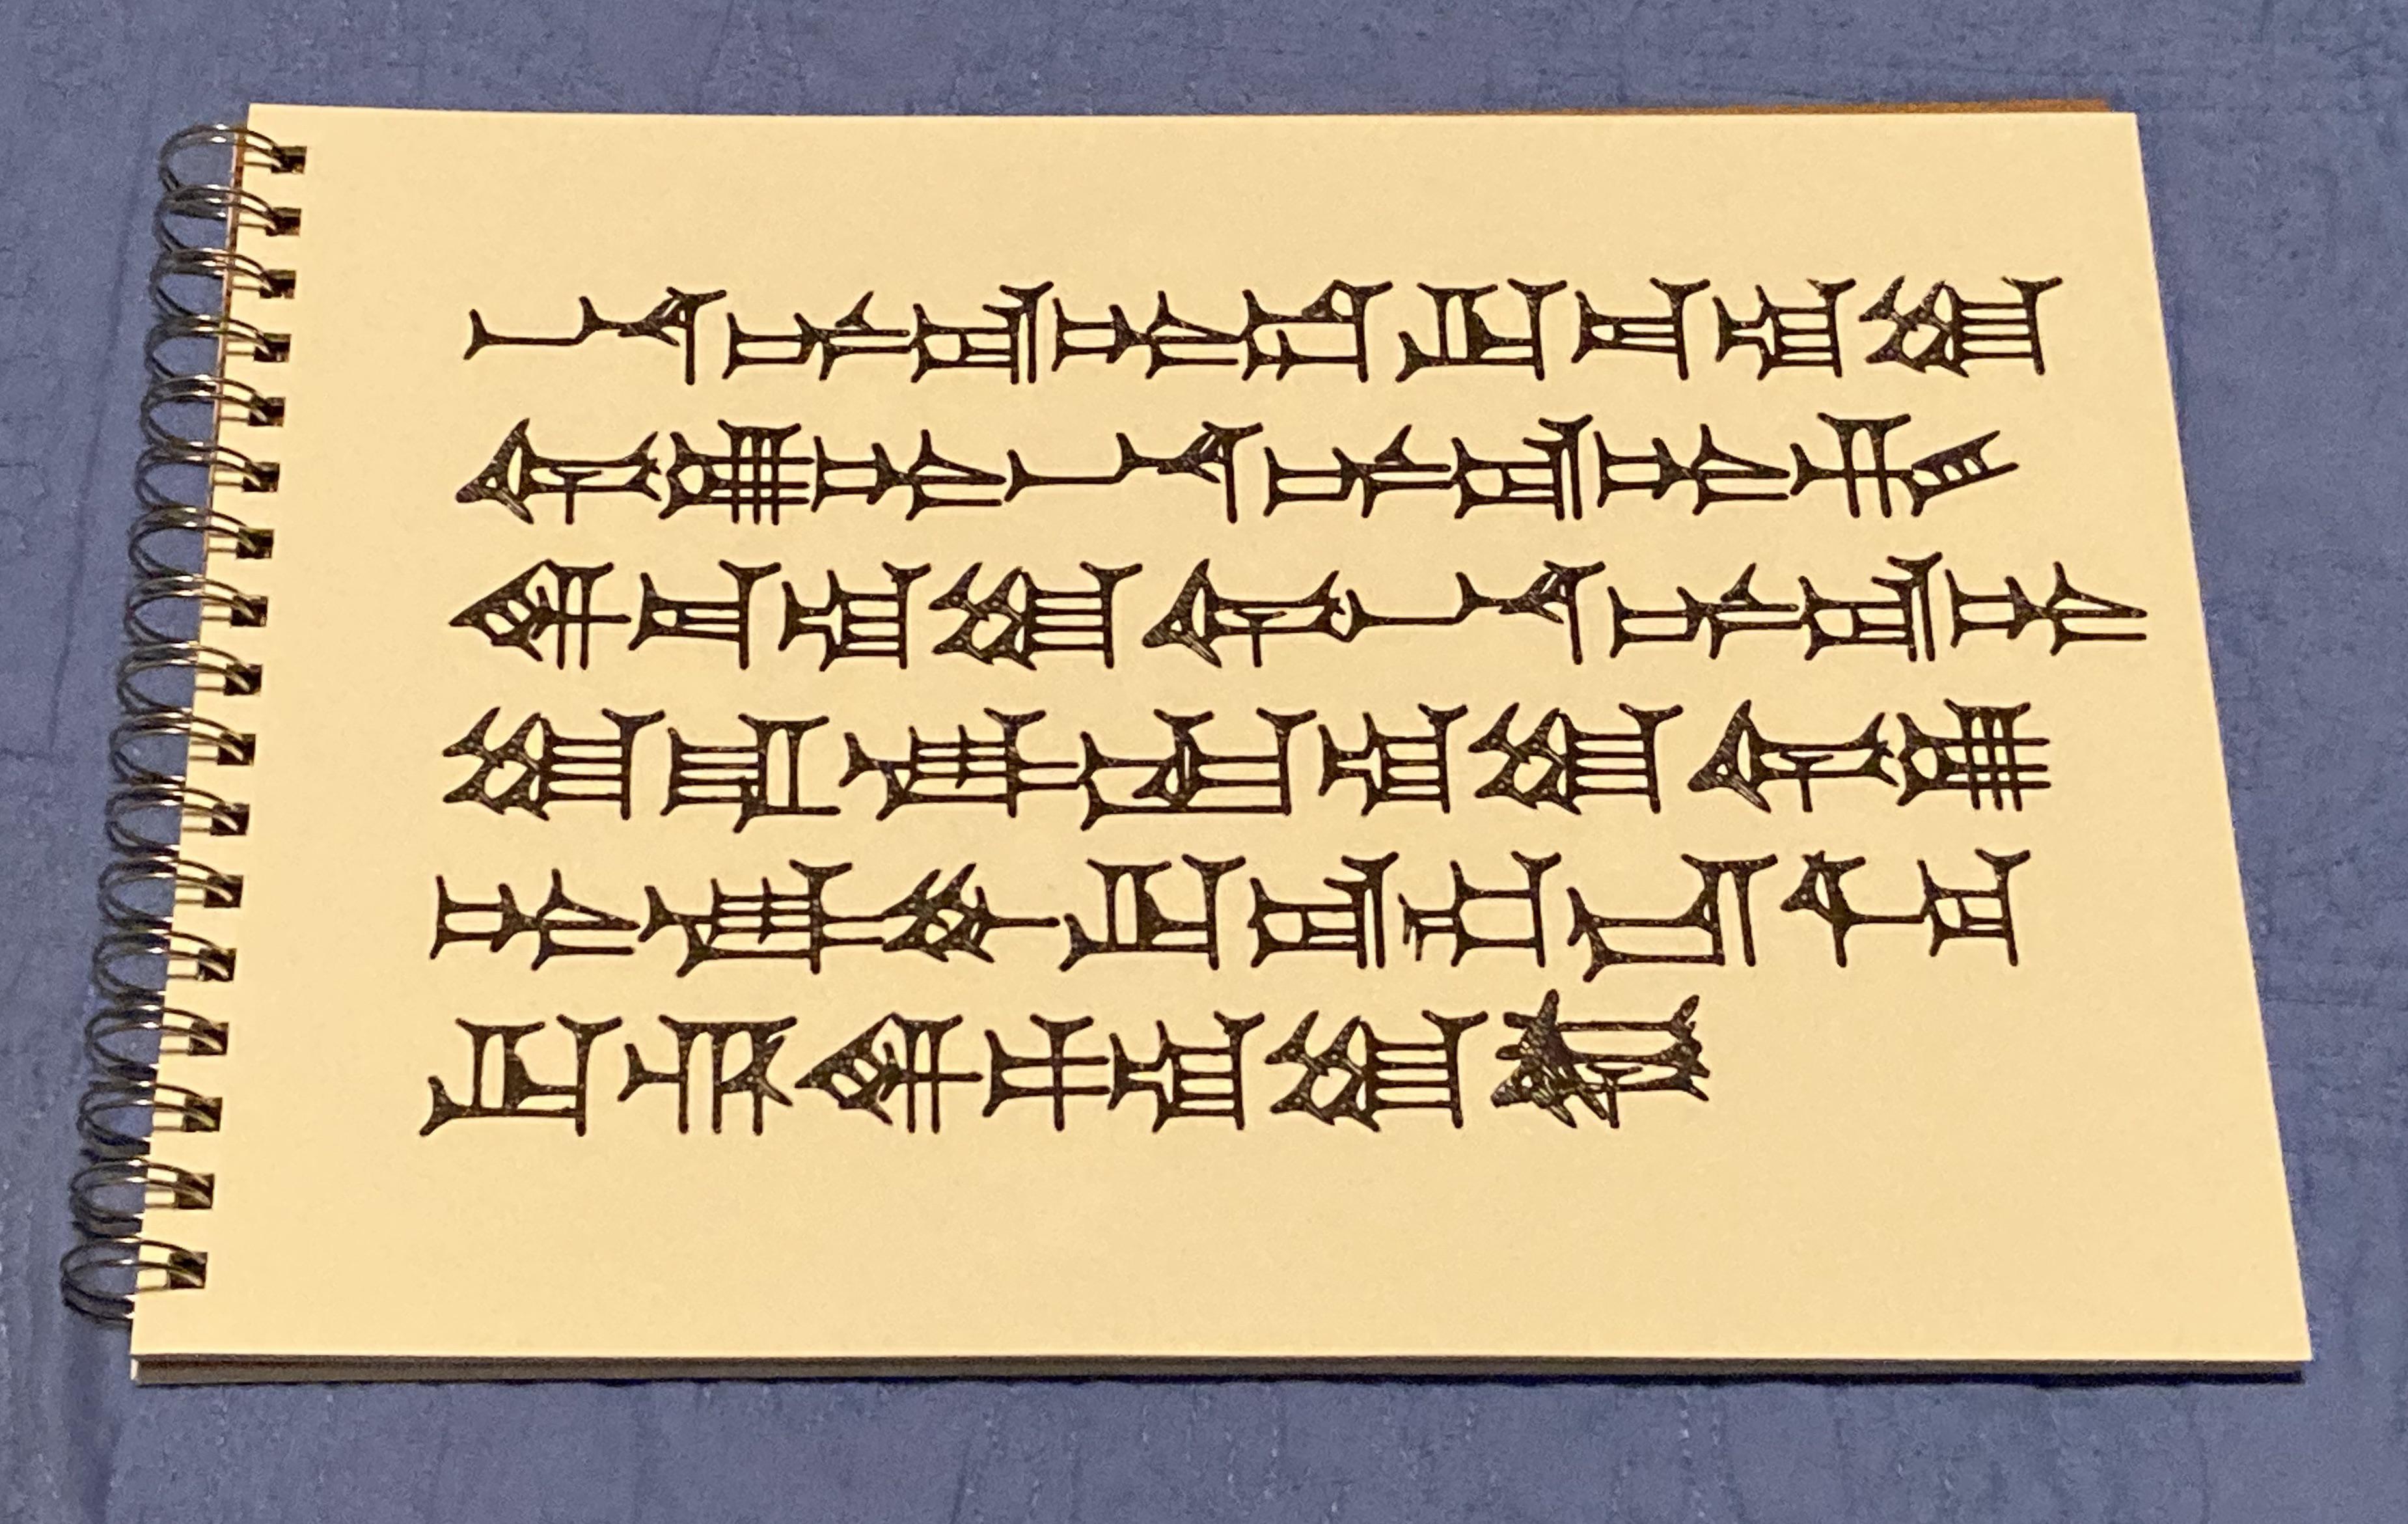 http://blackspeech.ru/images/cuneiform.jpg